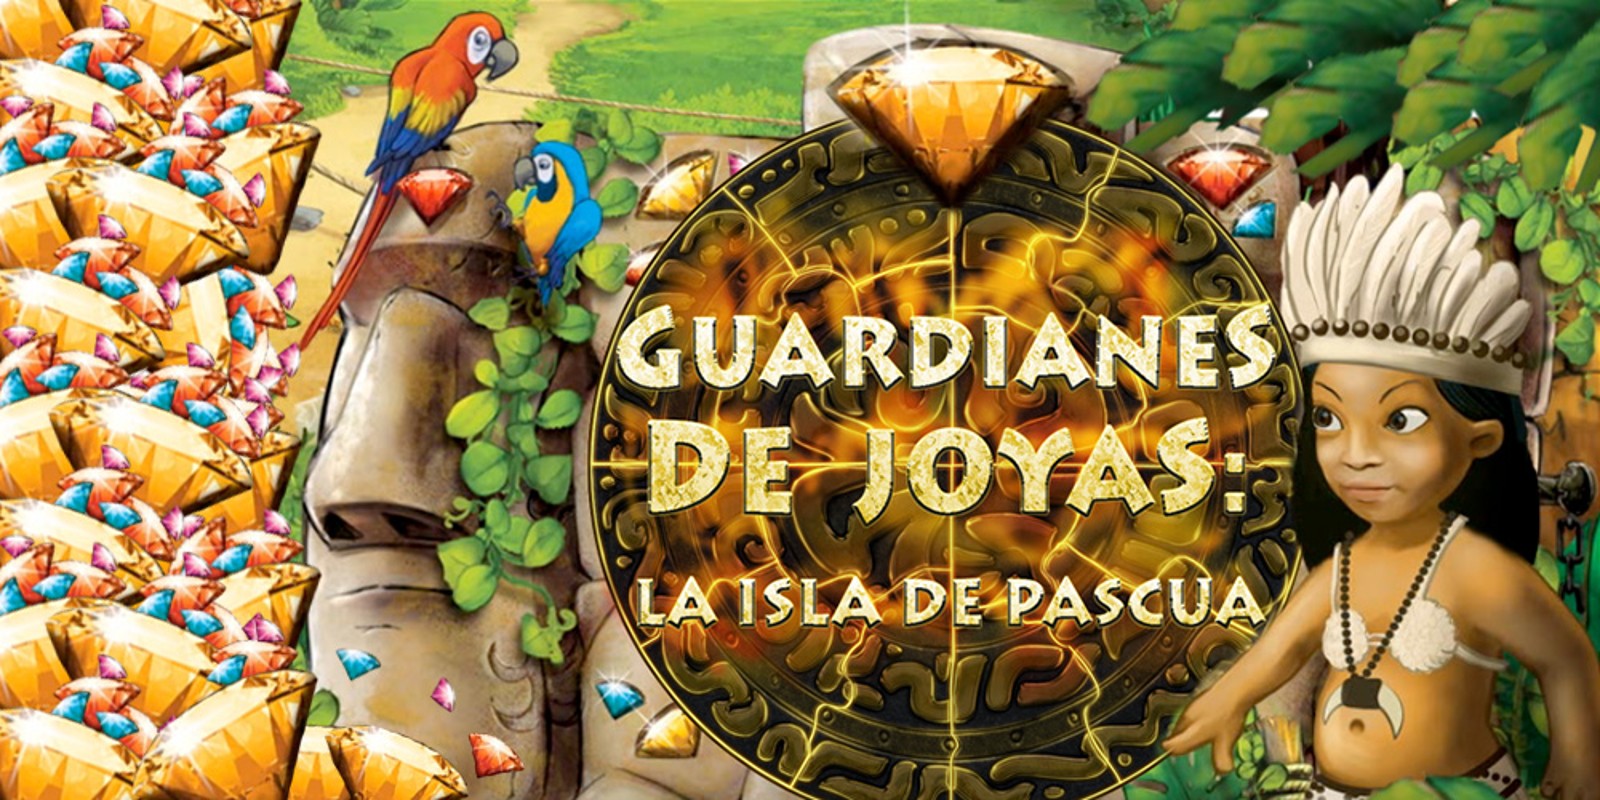 Guardianes de joyas: la Isla de Pascua